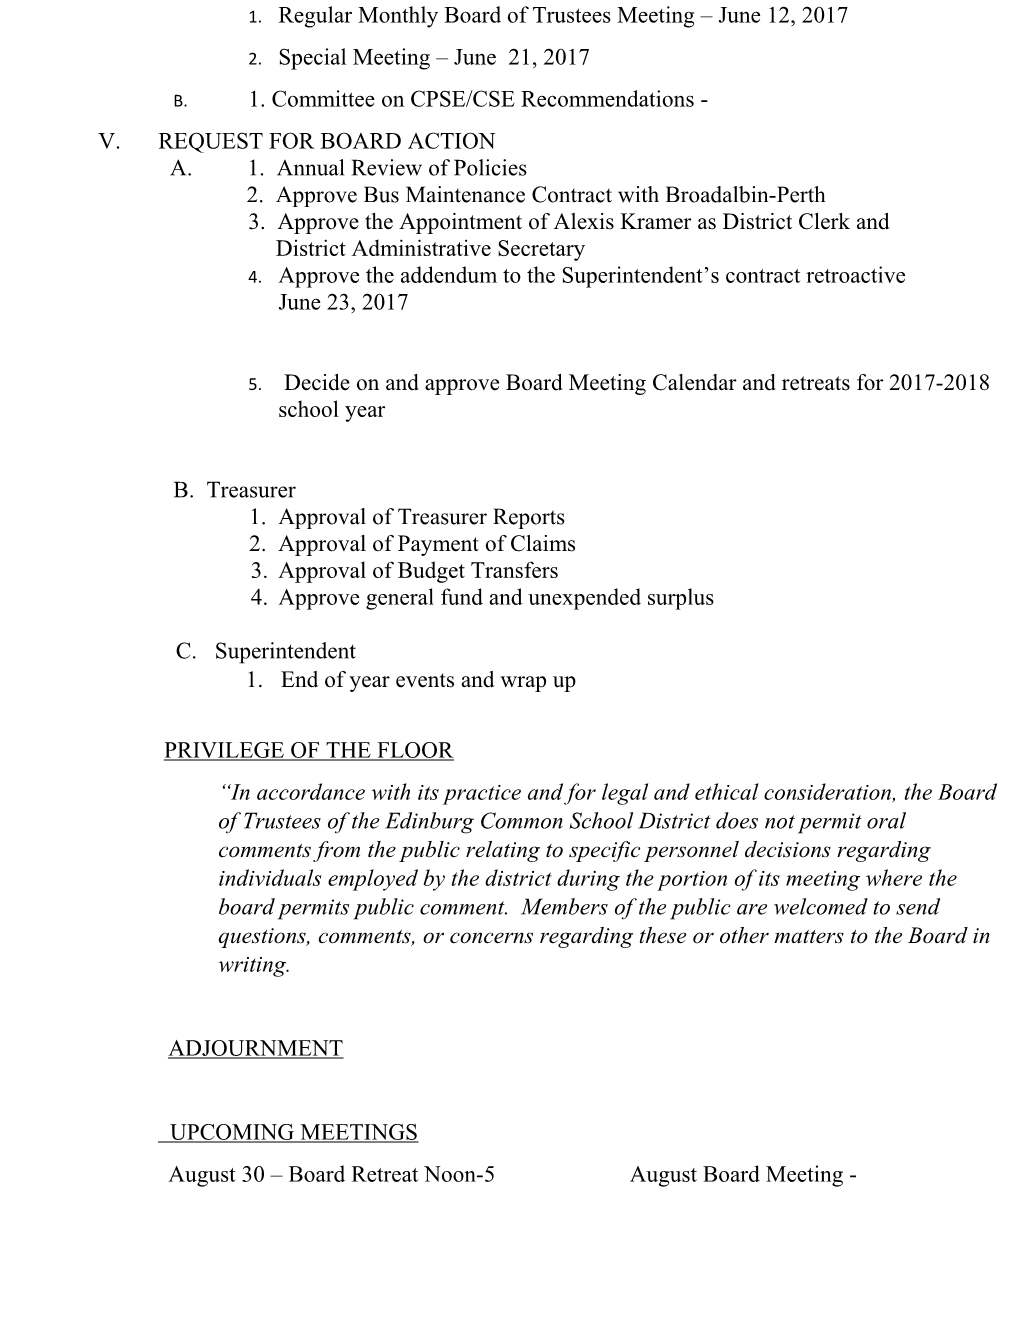 Board of Trustees Re-Organizational Meeting